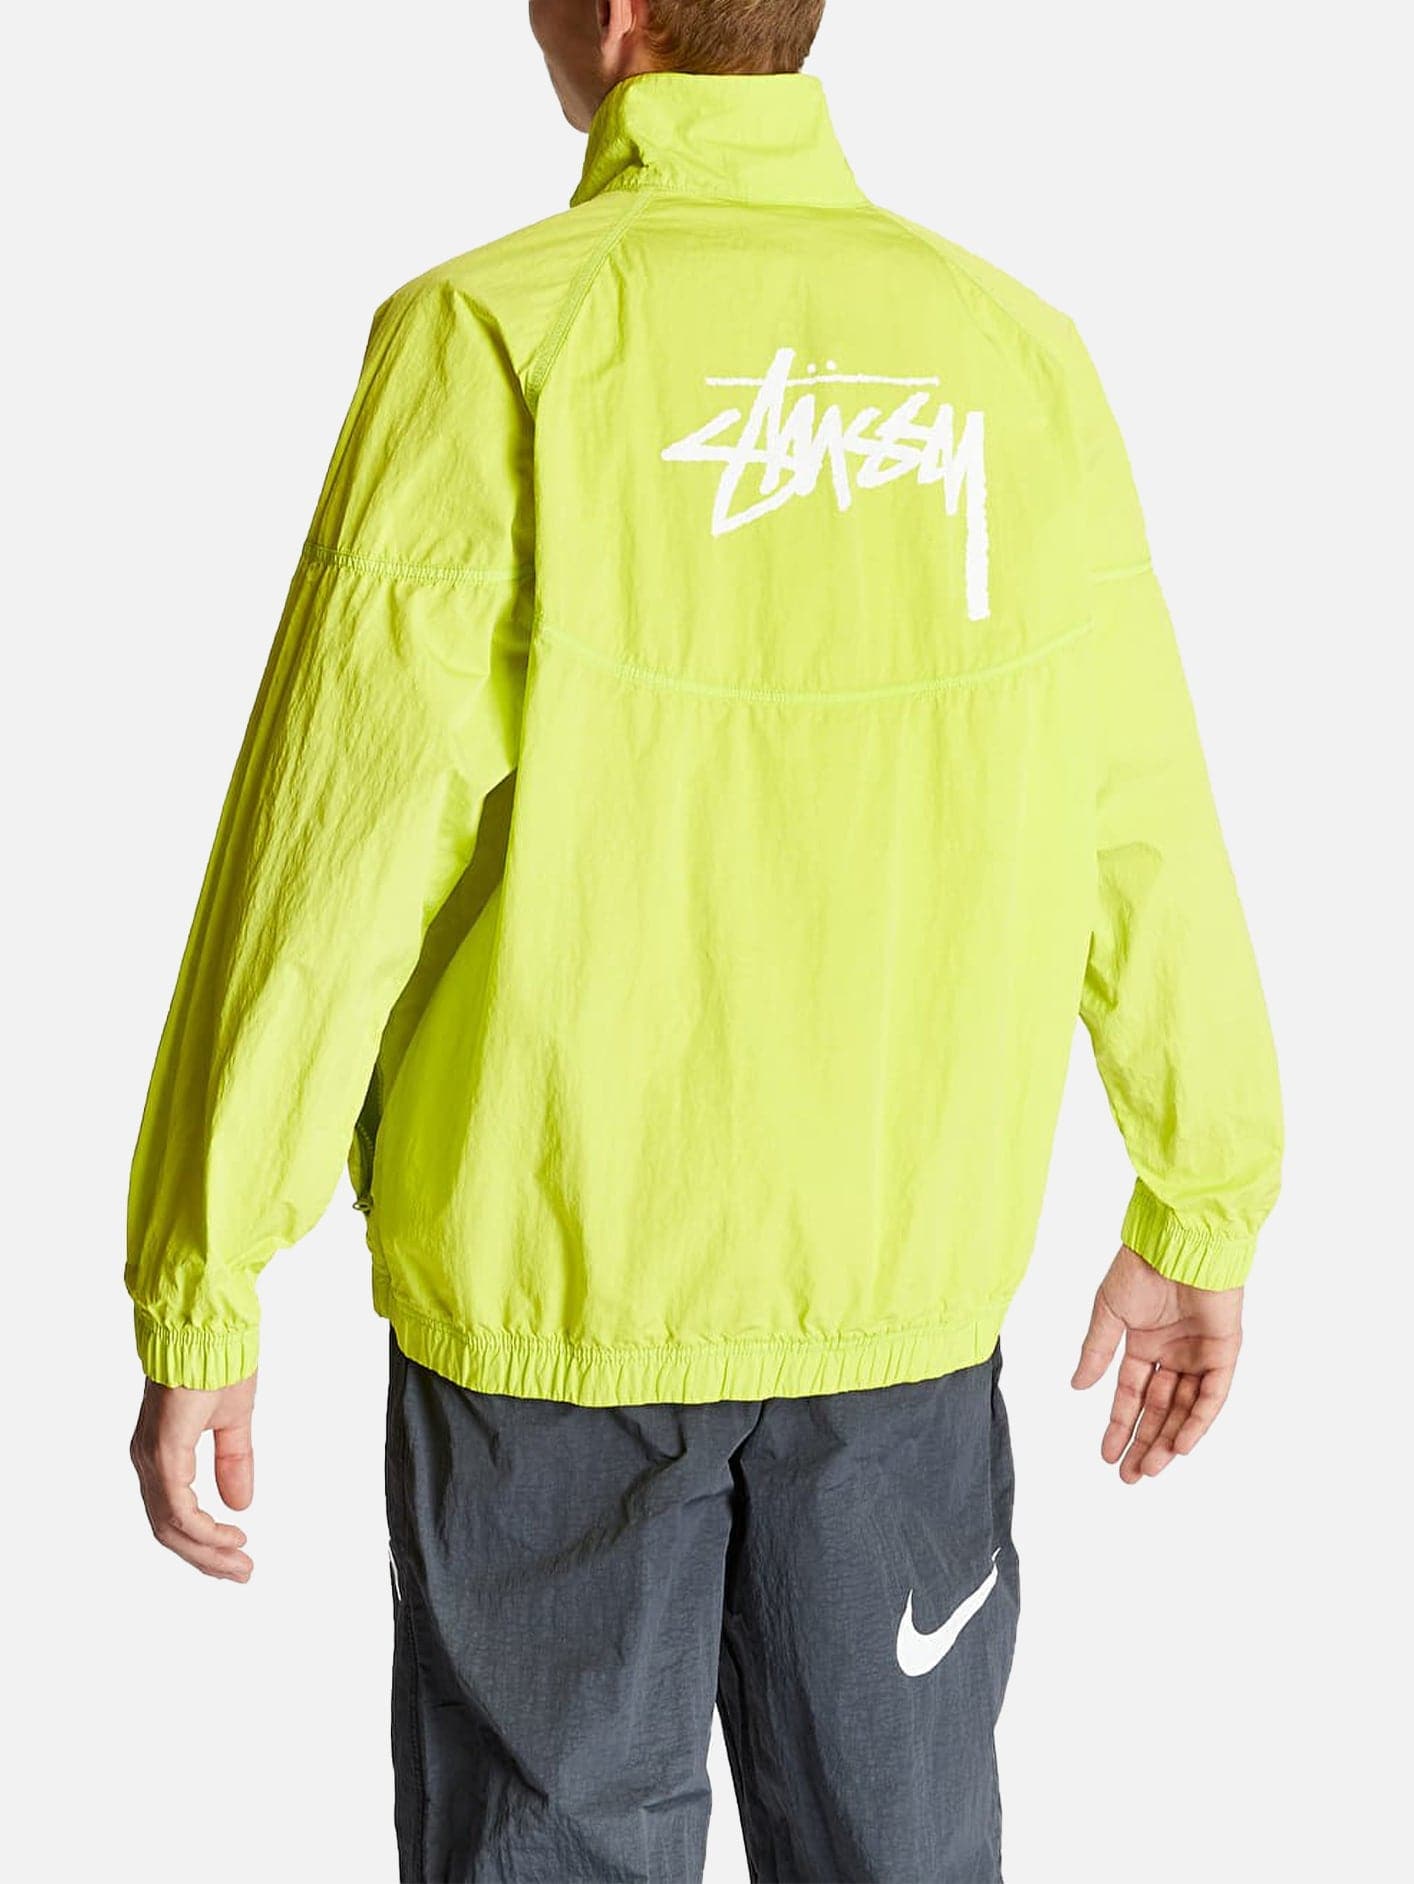 Nike X Stussy Windrunner Jacket 'Bright Cactus' | CEKET shopi go